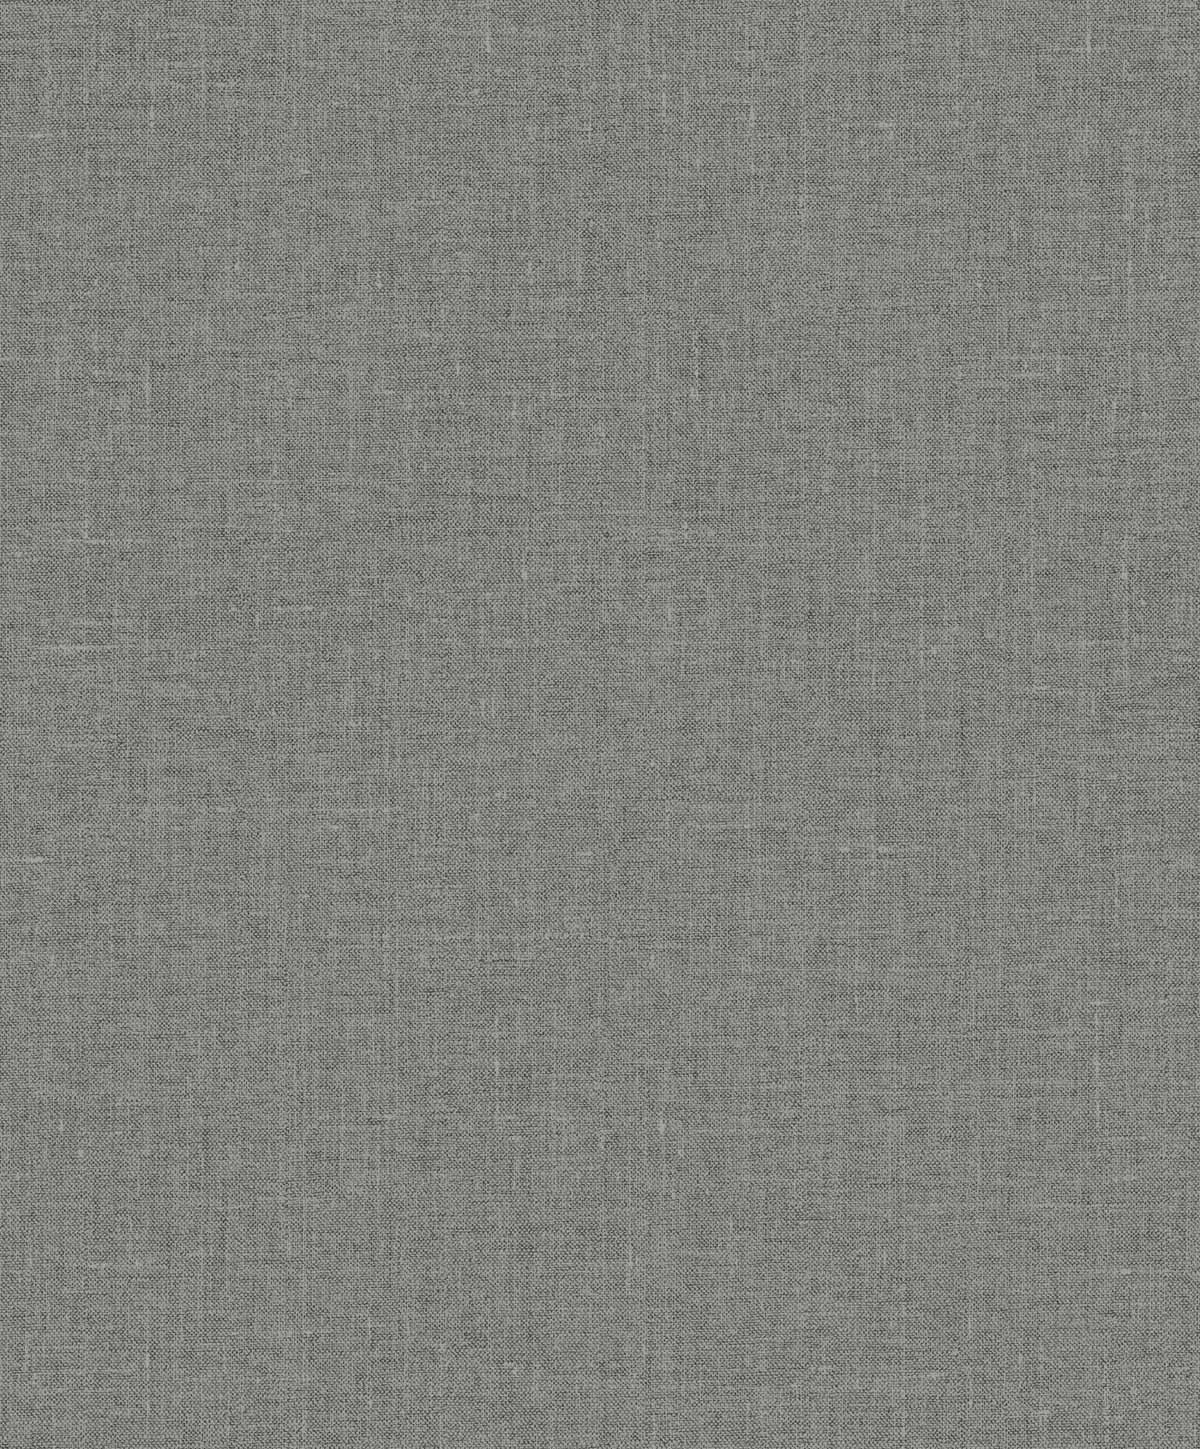 Seabrook Designs EW10110 White Heron Abington Faux Linen  Wallpaper Sleek Charcoal